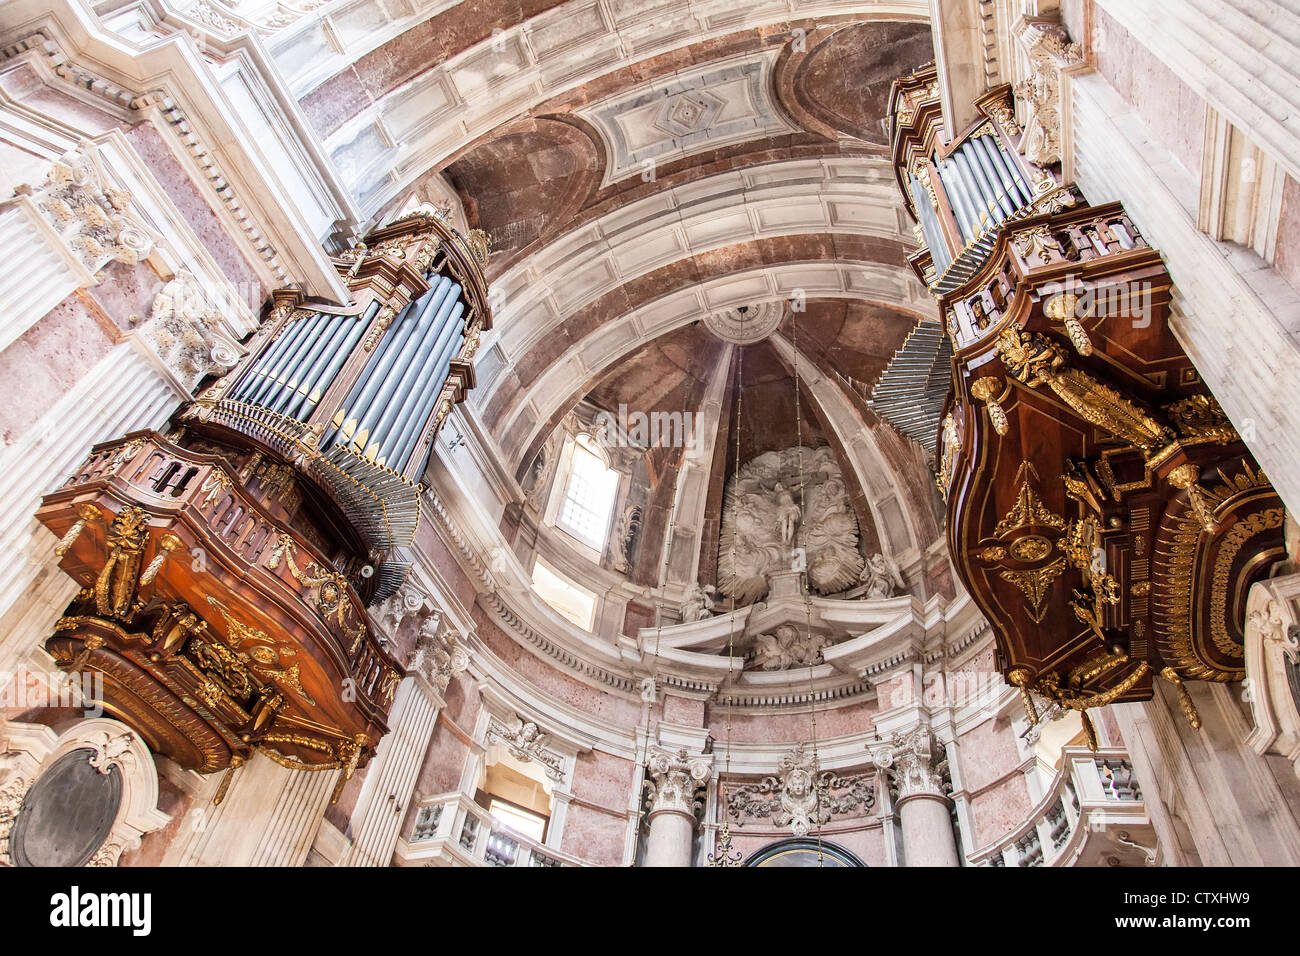 Due dei sei organi (altare principale area) della Mafra National Palace e convento in Portogallo. Architettura Barocca. Foto Stock